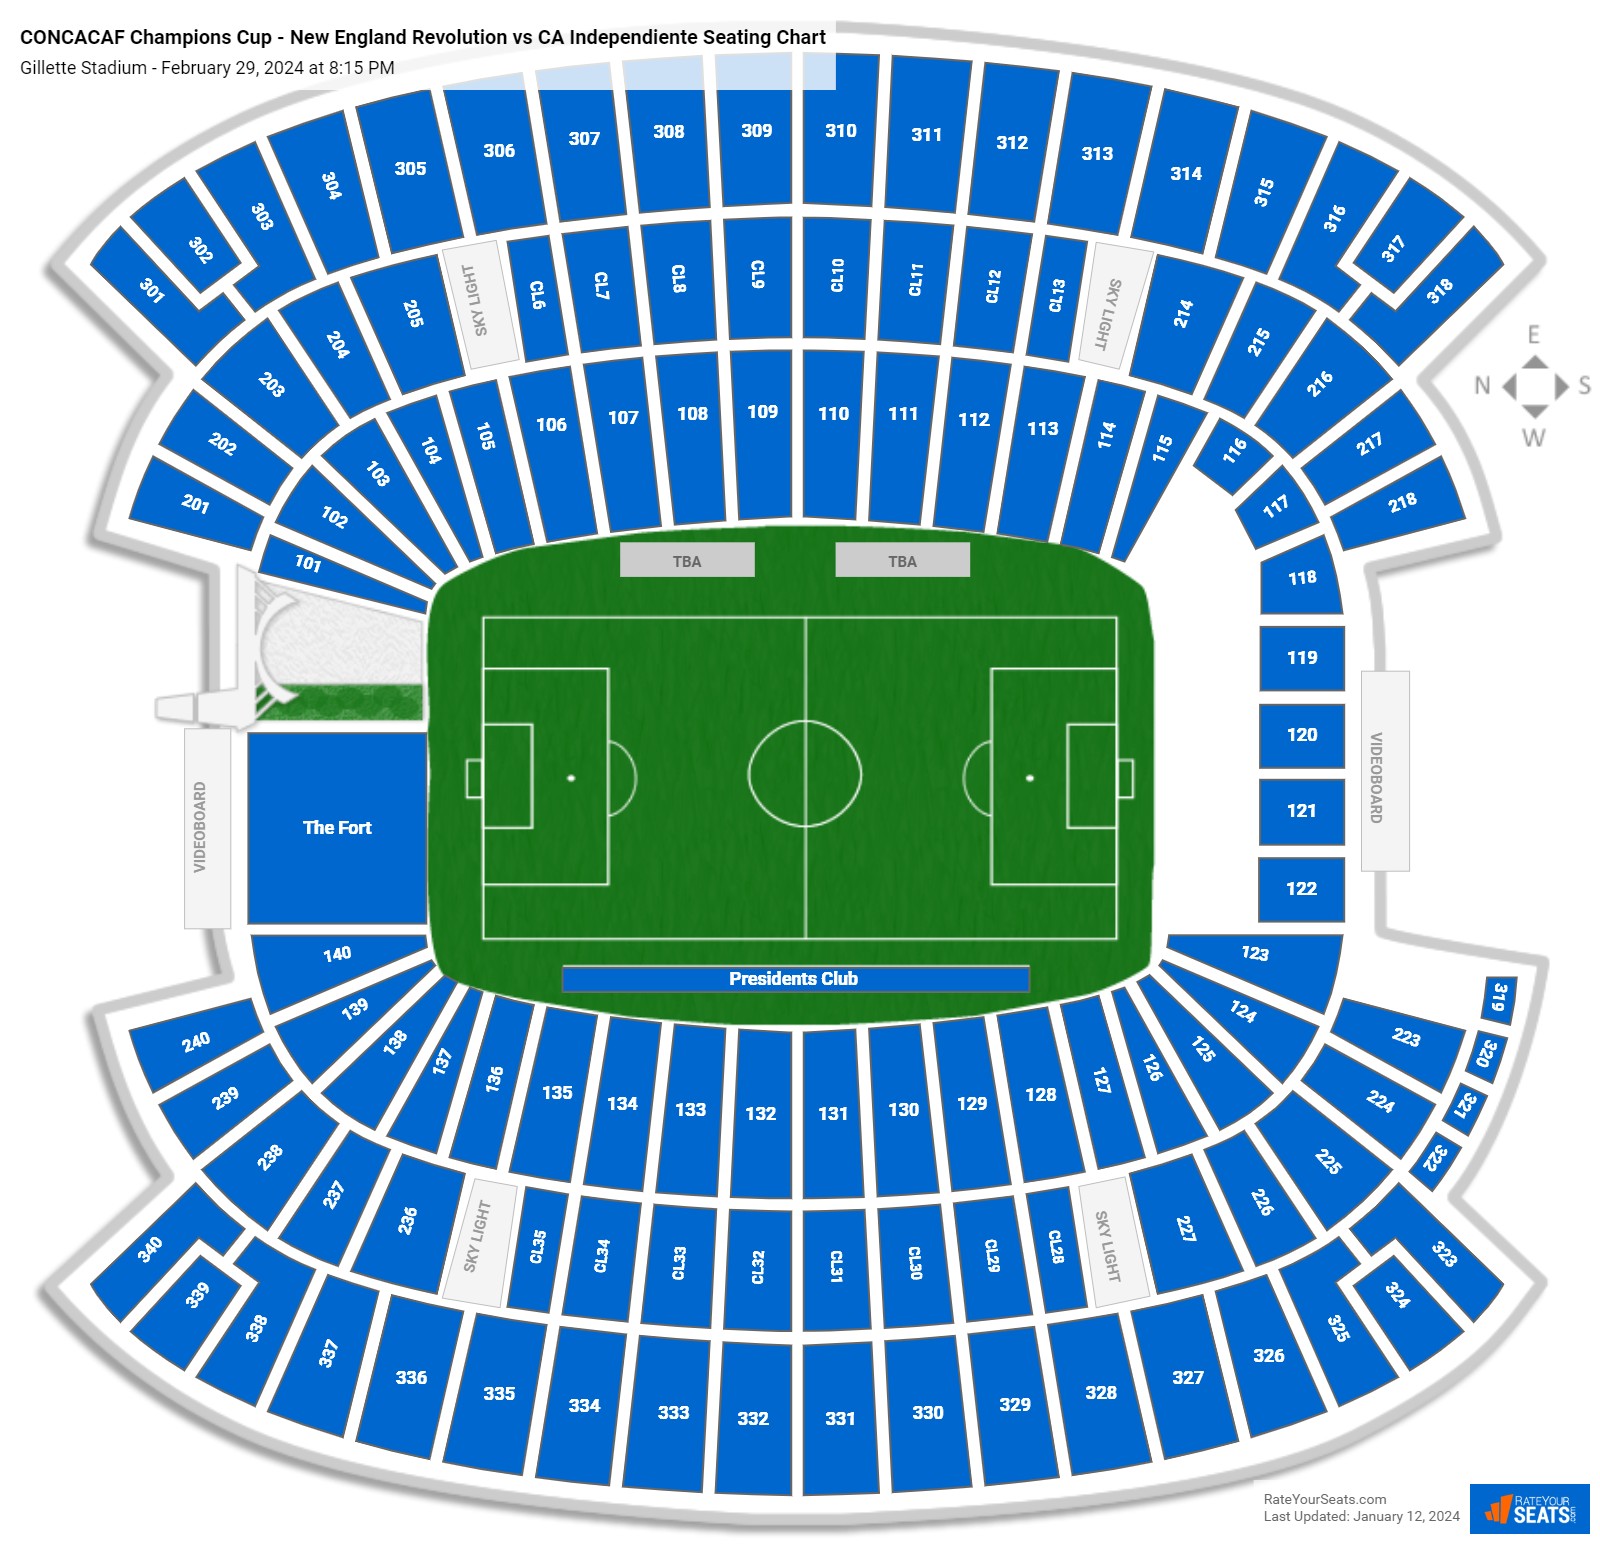 Gillette Stadium Concert Seating Chart Rateyourseats Com